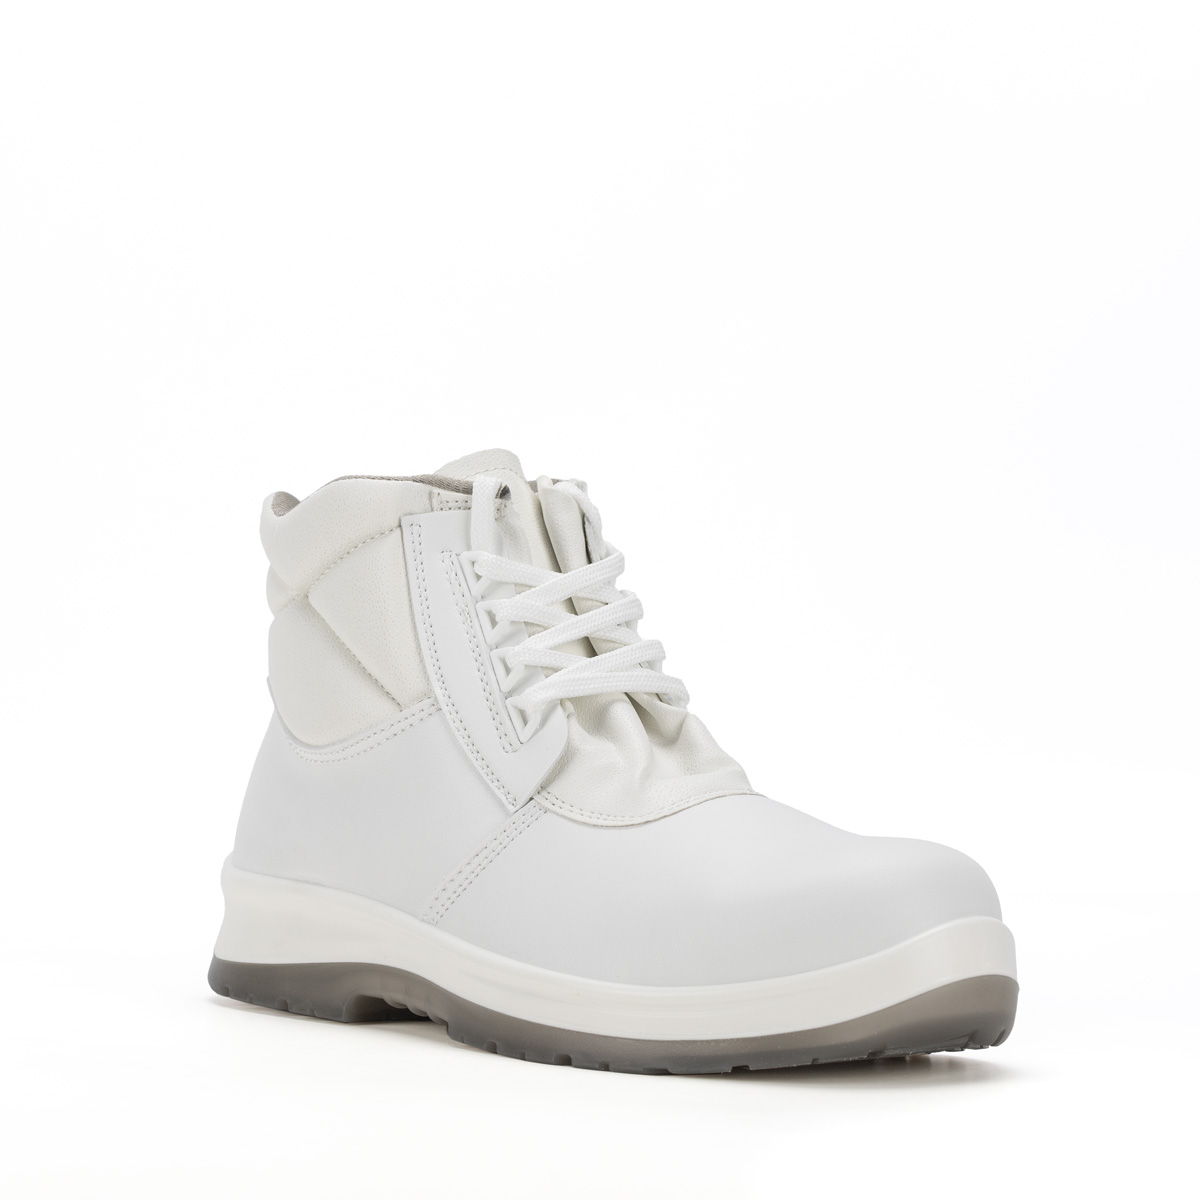 Crystal BERGAMO - Ankle modello Shoes SRC protezione classe Safety - con boot S2 Peak Codice 86206-00 Sixton di